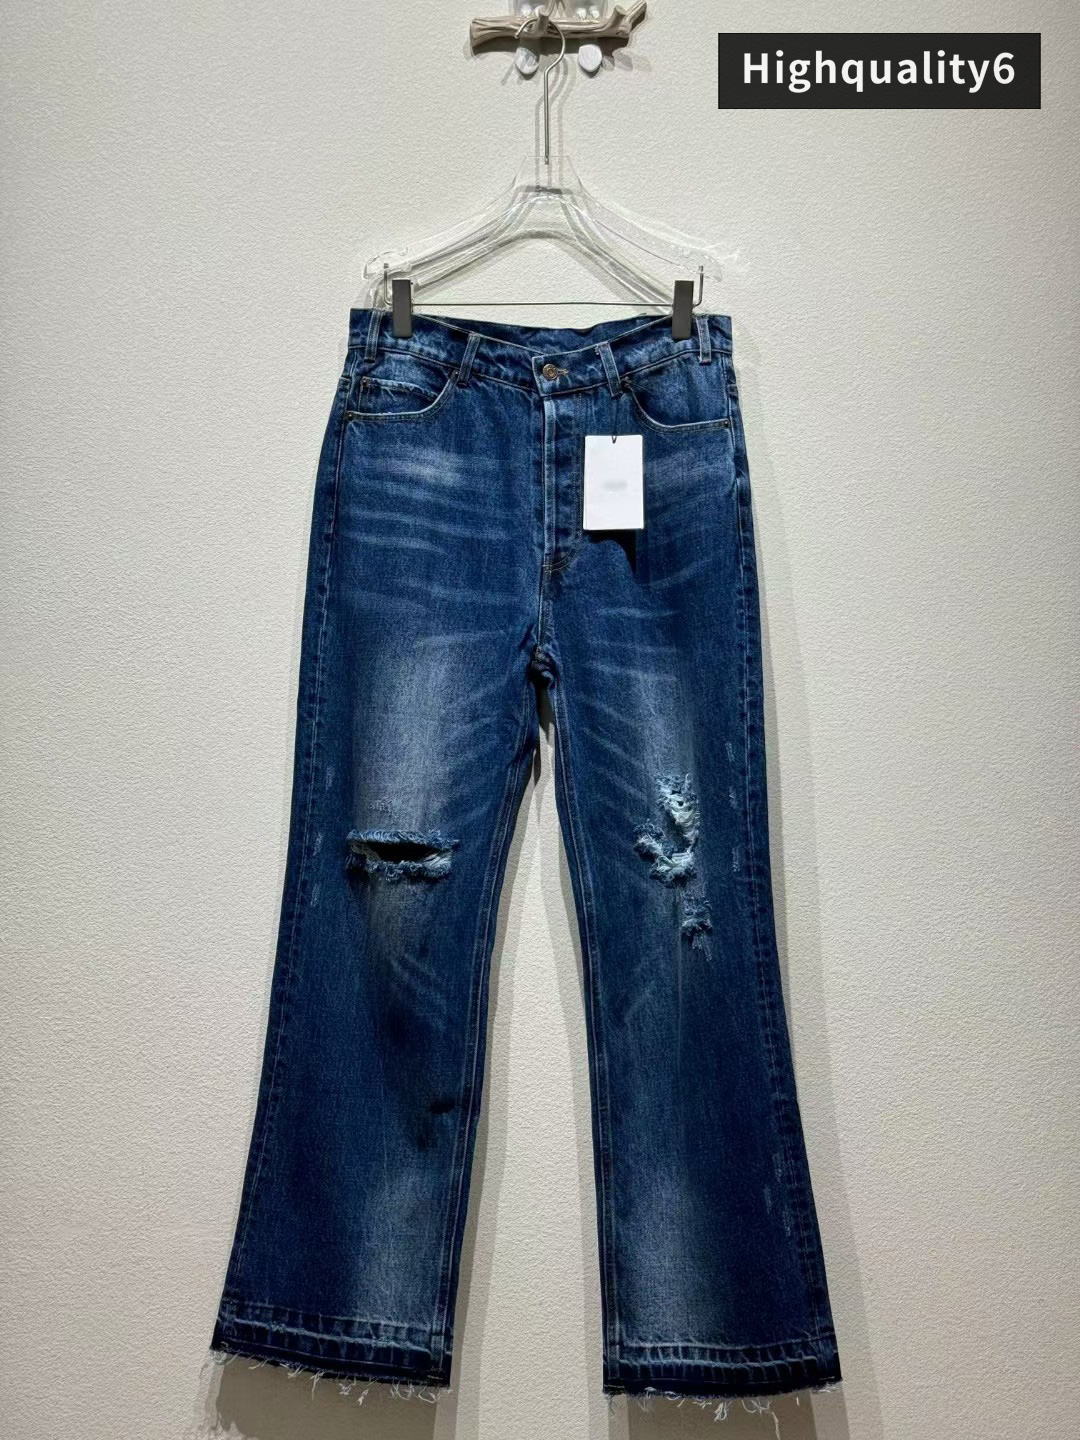 CE-Marke Hochwertige Jeans, klassische, verzweifelte Jeans, Triumphbogen geschnittene Männer schlanke Fit Jeans, modische und vielseitige lange Hosen, kostenloser Versand